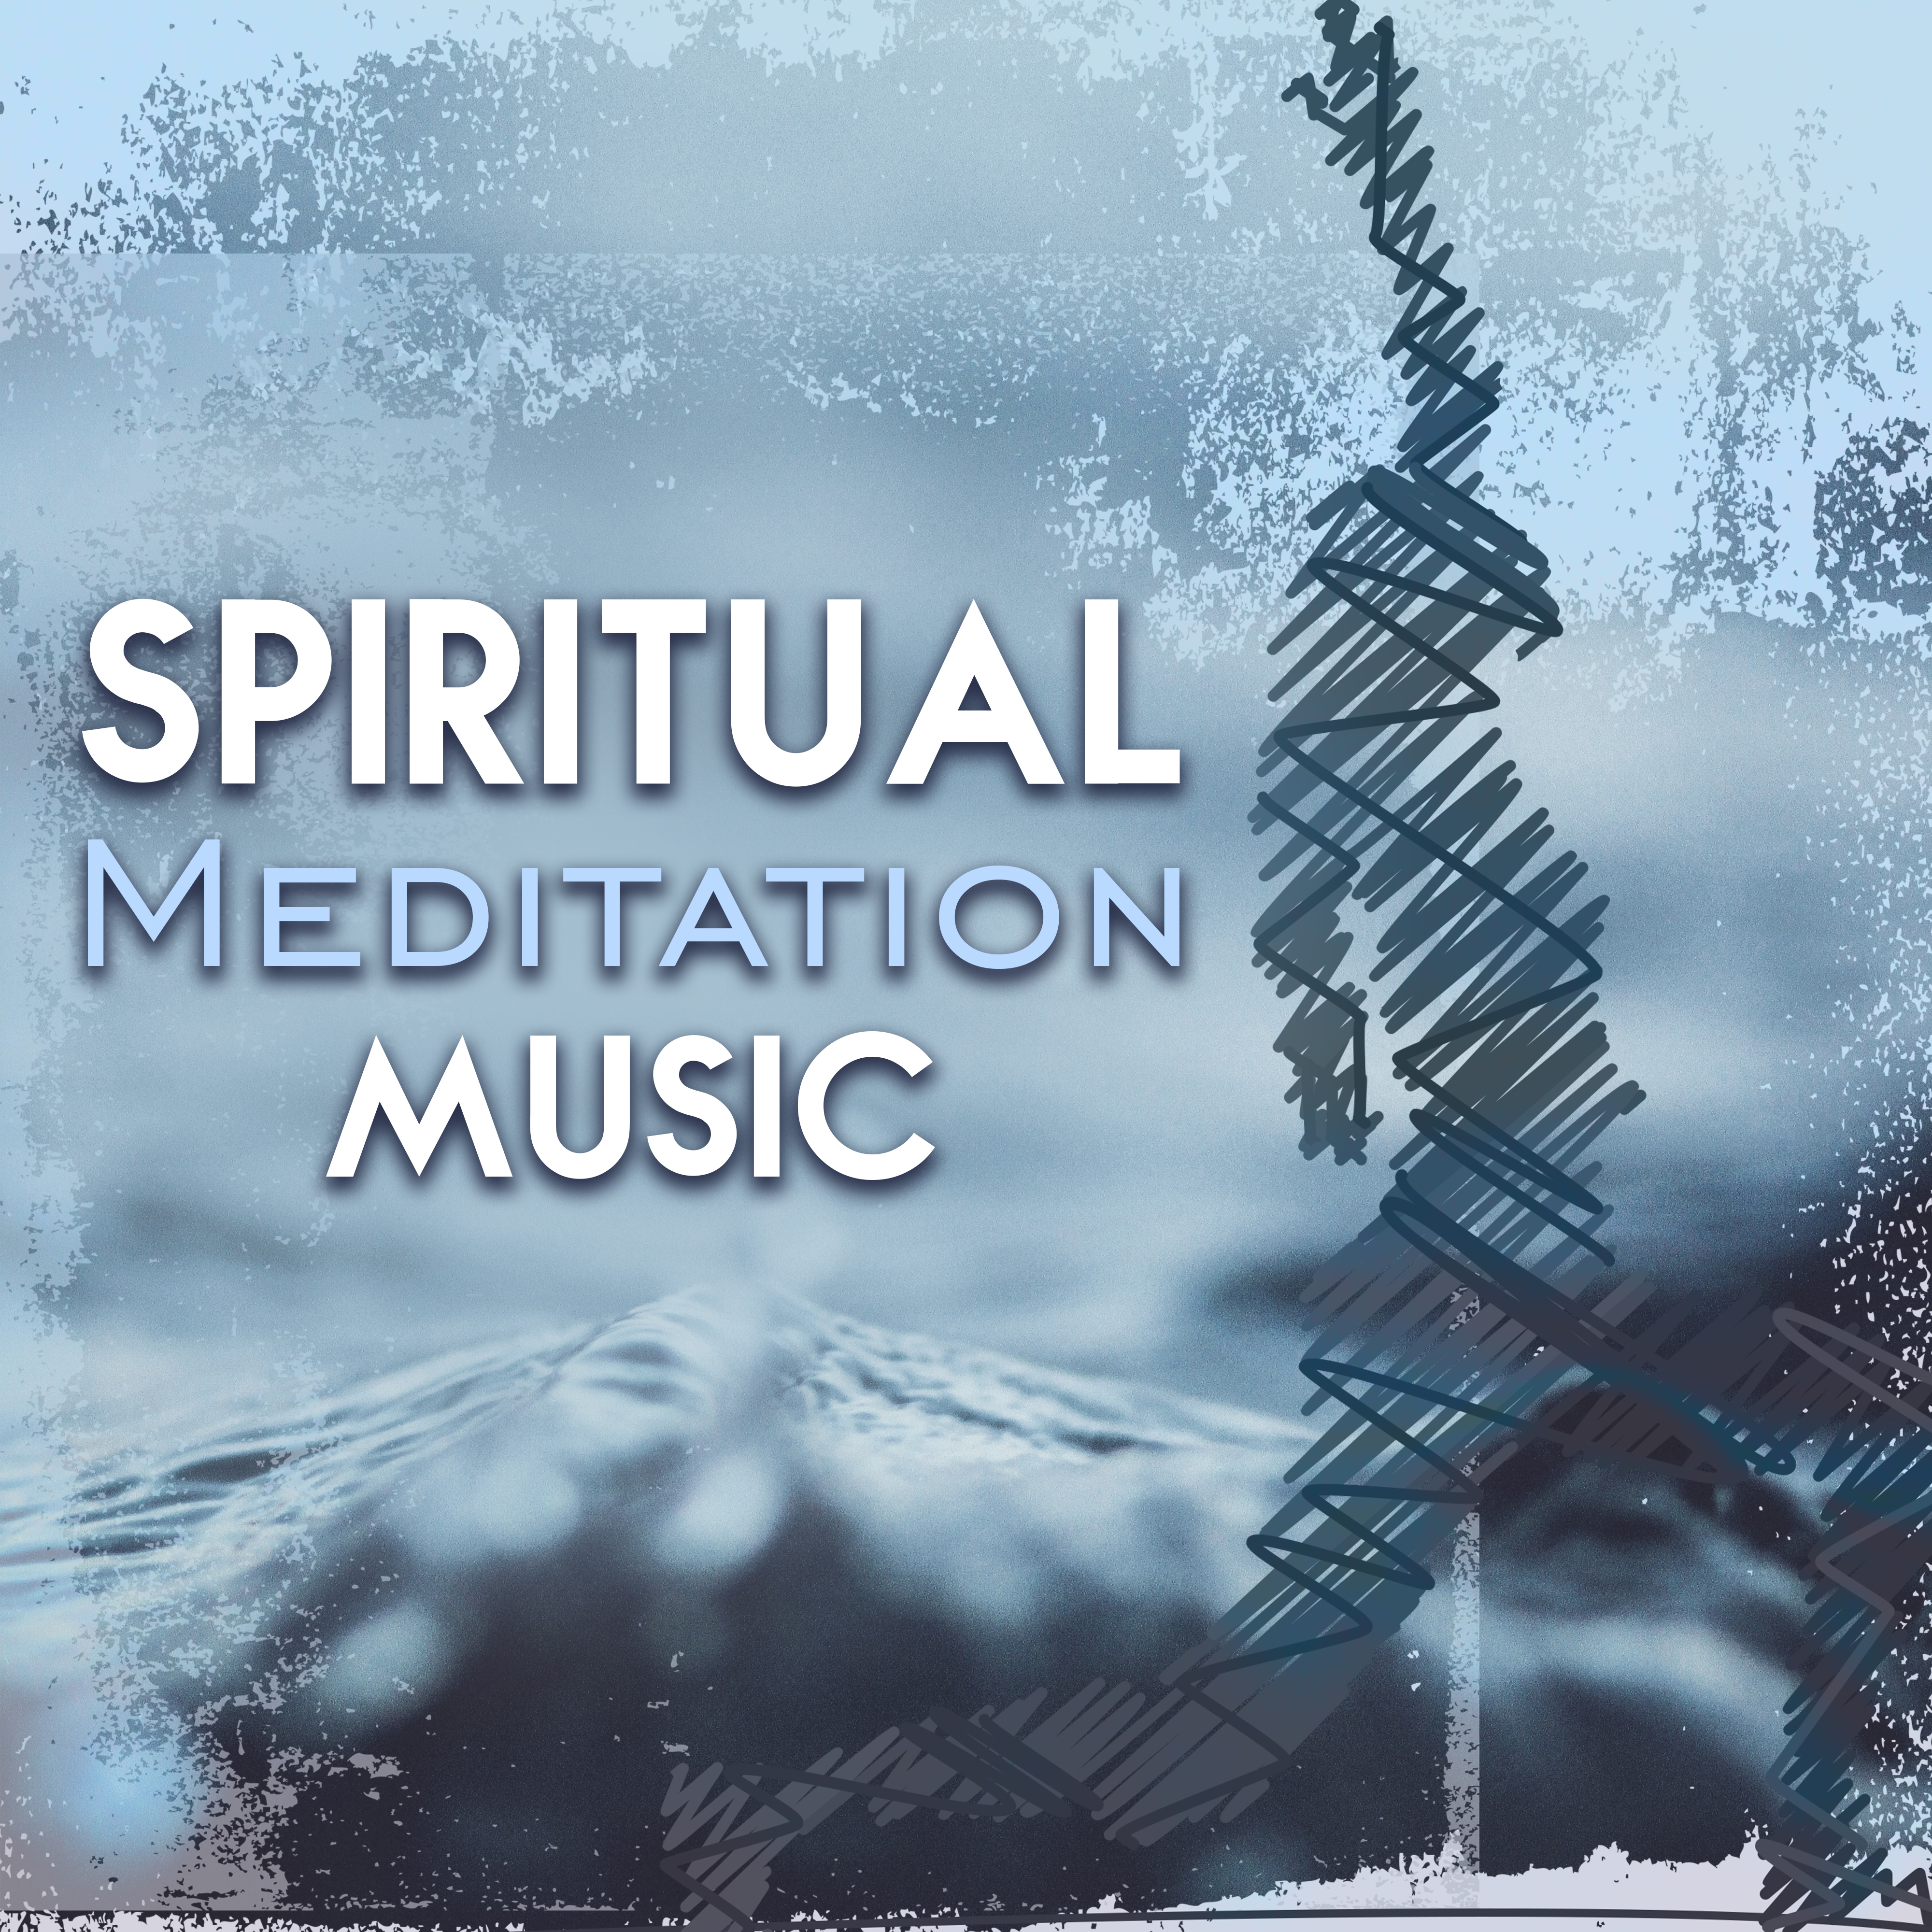 Spiritual Meditation Music  Chilled Songs for Meditate, Spirit Free, Inner Journey, Calm Music